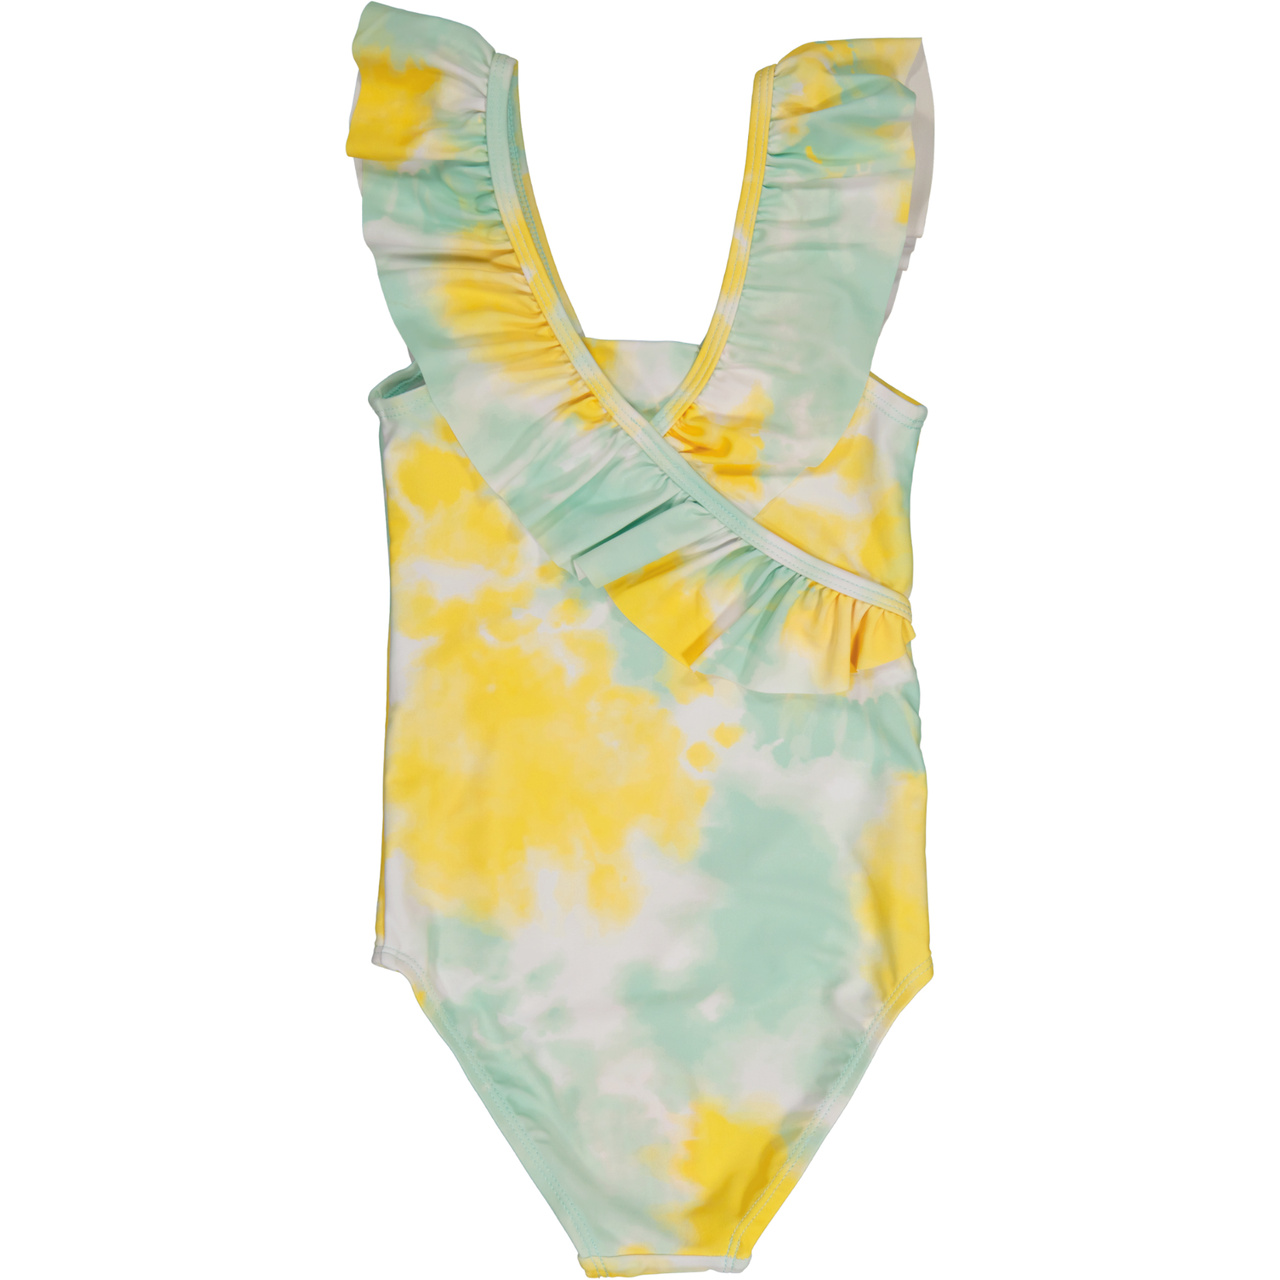 UV swim suit Tie dye yellow